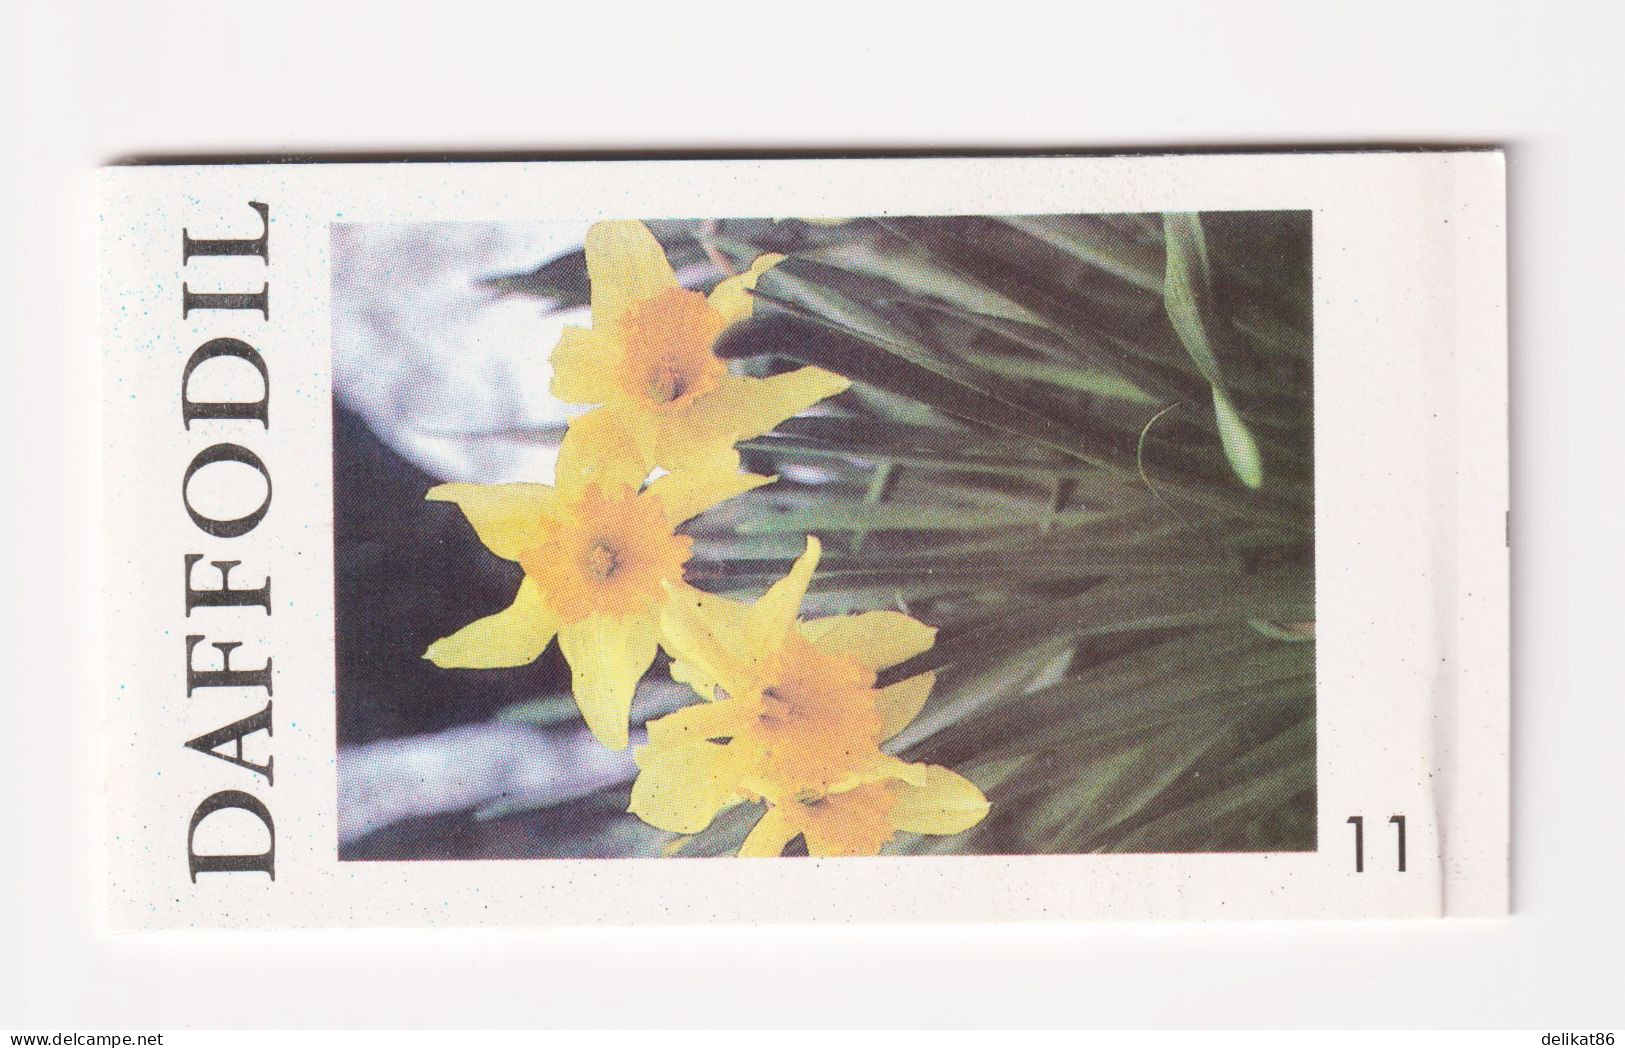 Daffodil Test Booklet, Test Stamp, Specimen TDB 41 Probedruck 1990 - Essais, Réimpressions & Specimens